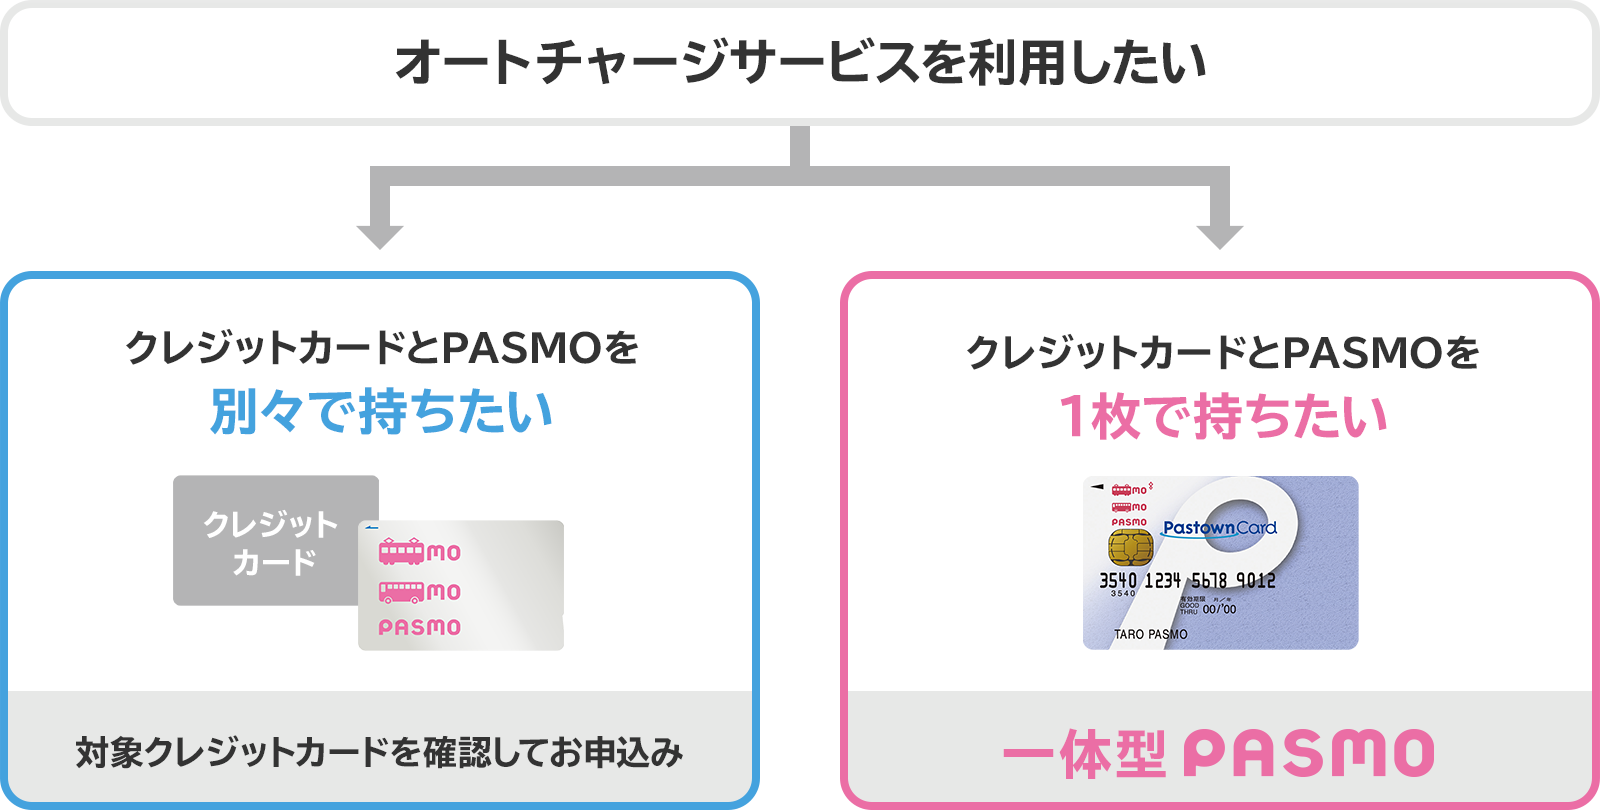 クレジットカードとPASMOを別々で持ちたいなら、対象クレジットカードの確認をしてお申込み。クレジットカードとPASMOを1枚で持ちたいなら、一体型PASMOのお申込み。